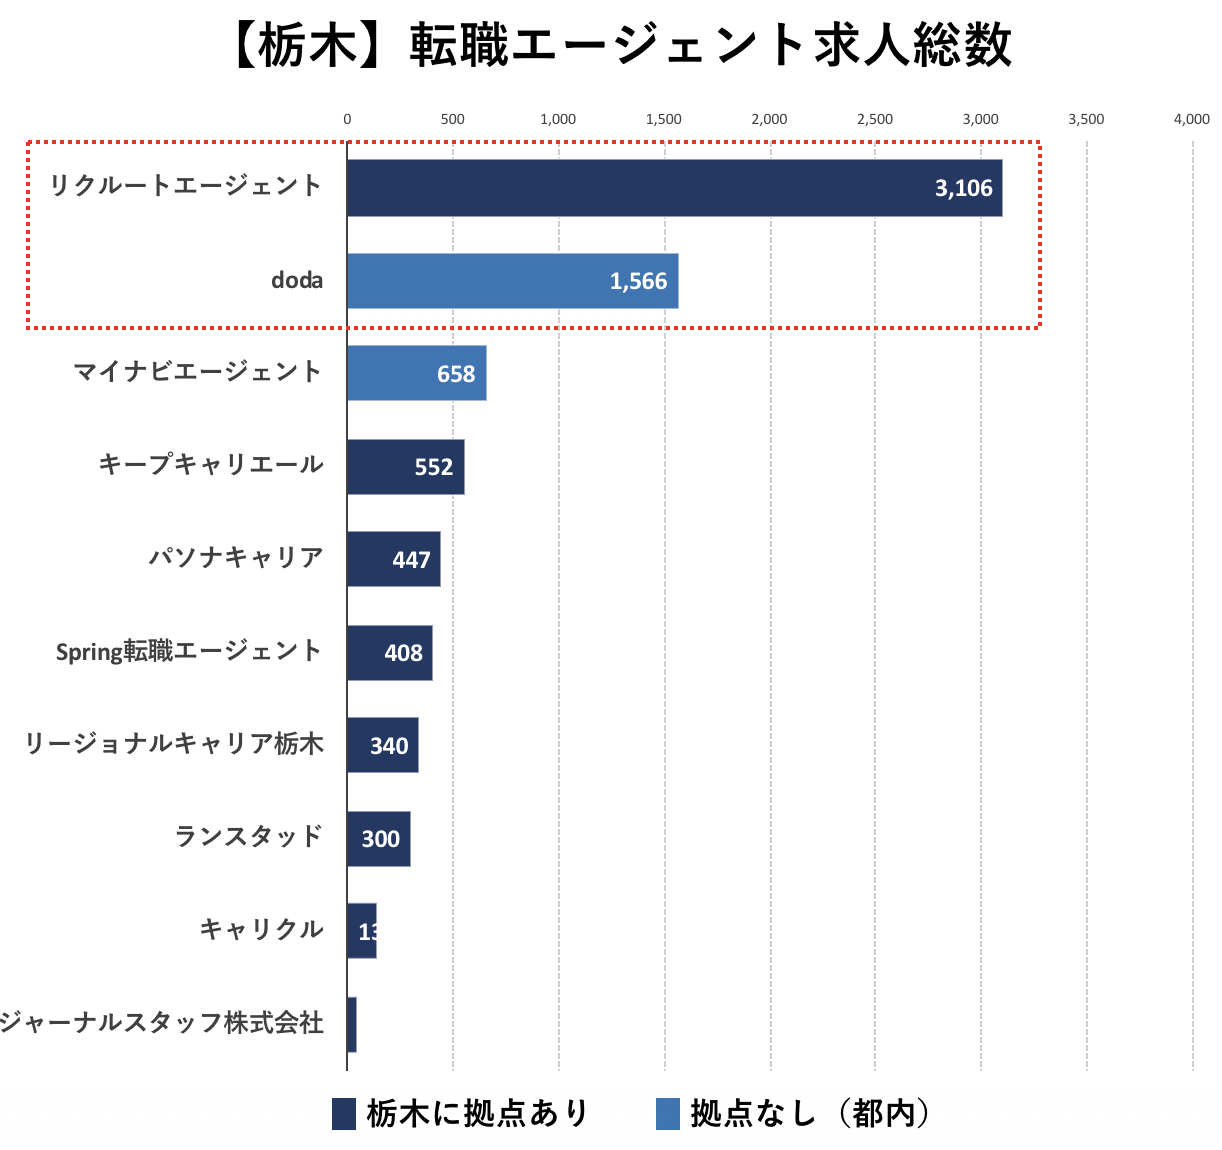 栃木の転職エージェントの求人数の比較